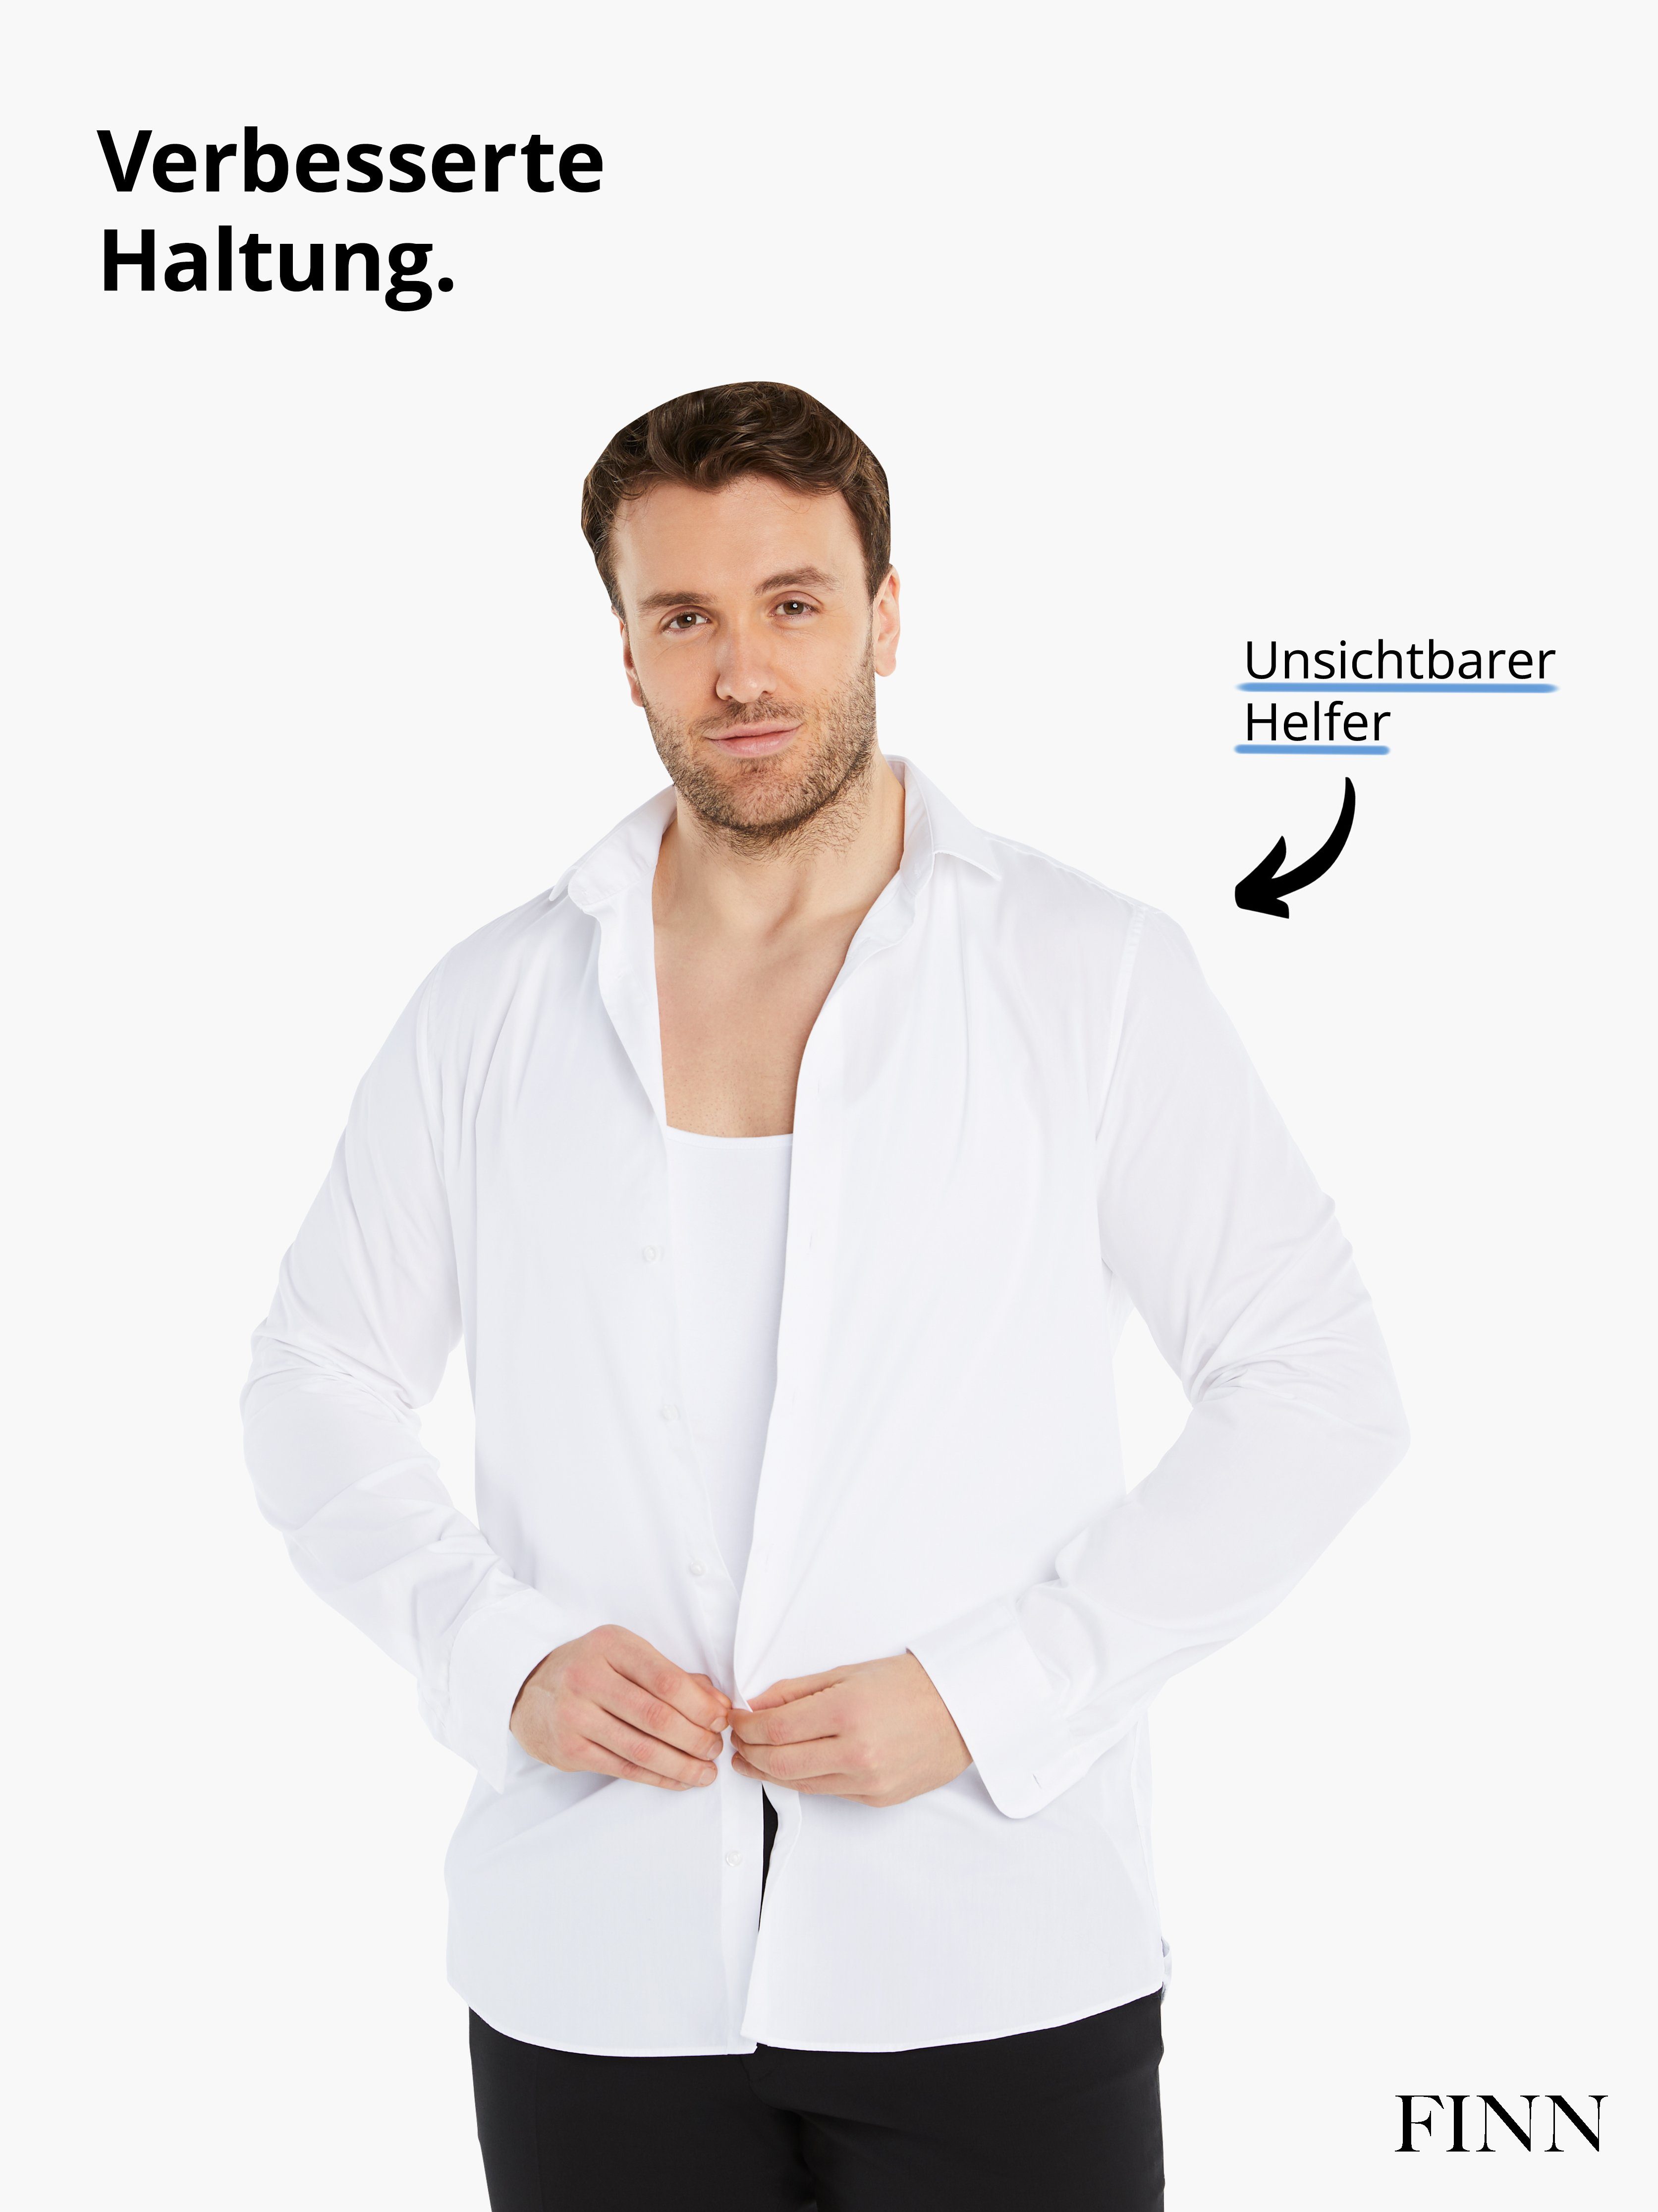 extra Shapinghemd Design Kompression, Ärmellos Kleidergröße eine Shapewear Kompressions-Unterhemd Weiß FINN Herren starke weniger